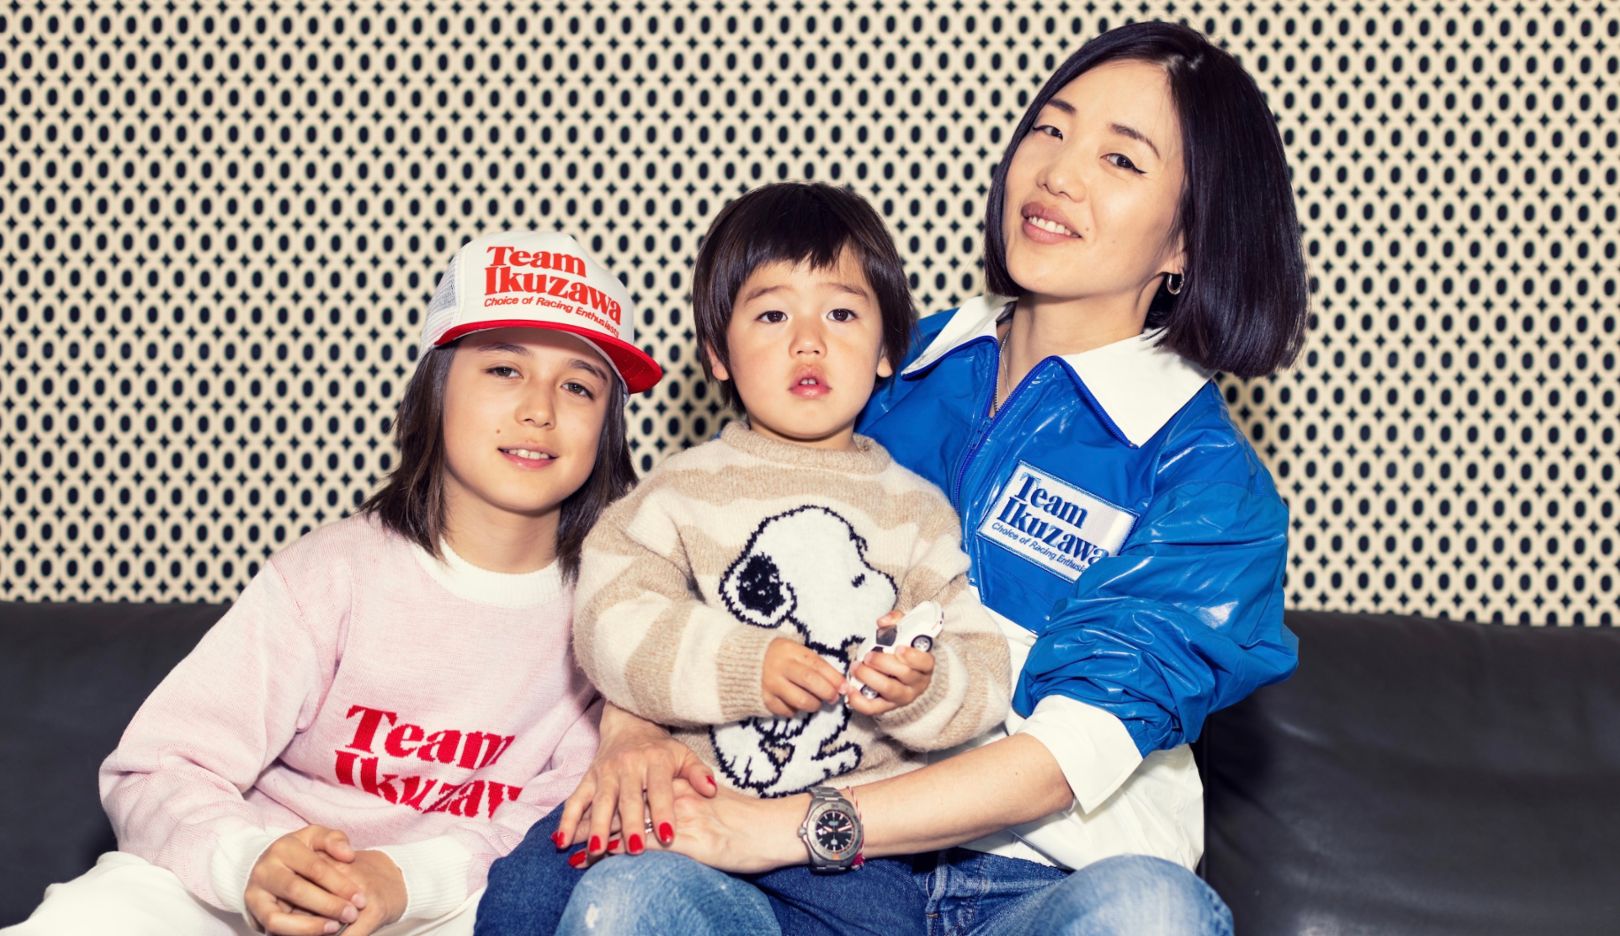 Familienbande: Mai Ikuzawa und ihre Söhne tragen gerne die Kleidung der Marke Team Ikuzawa.